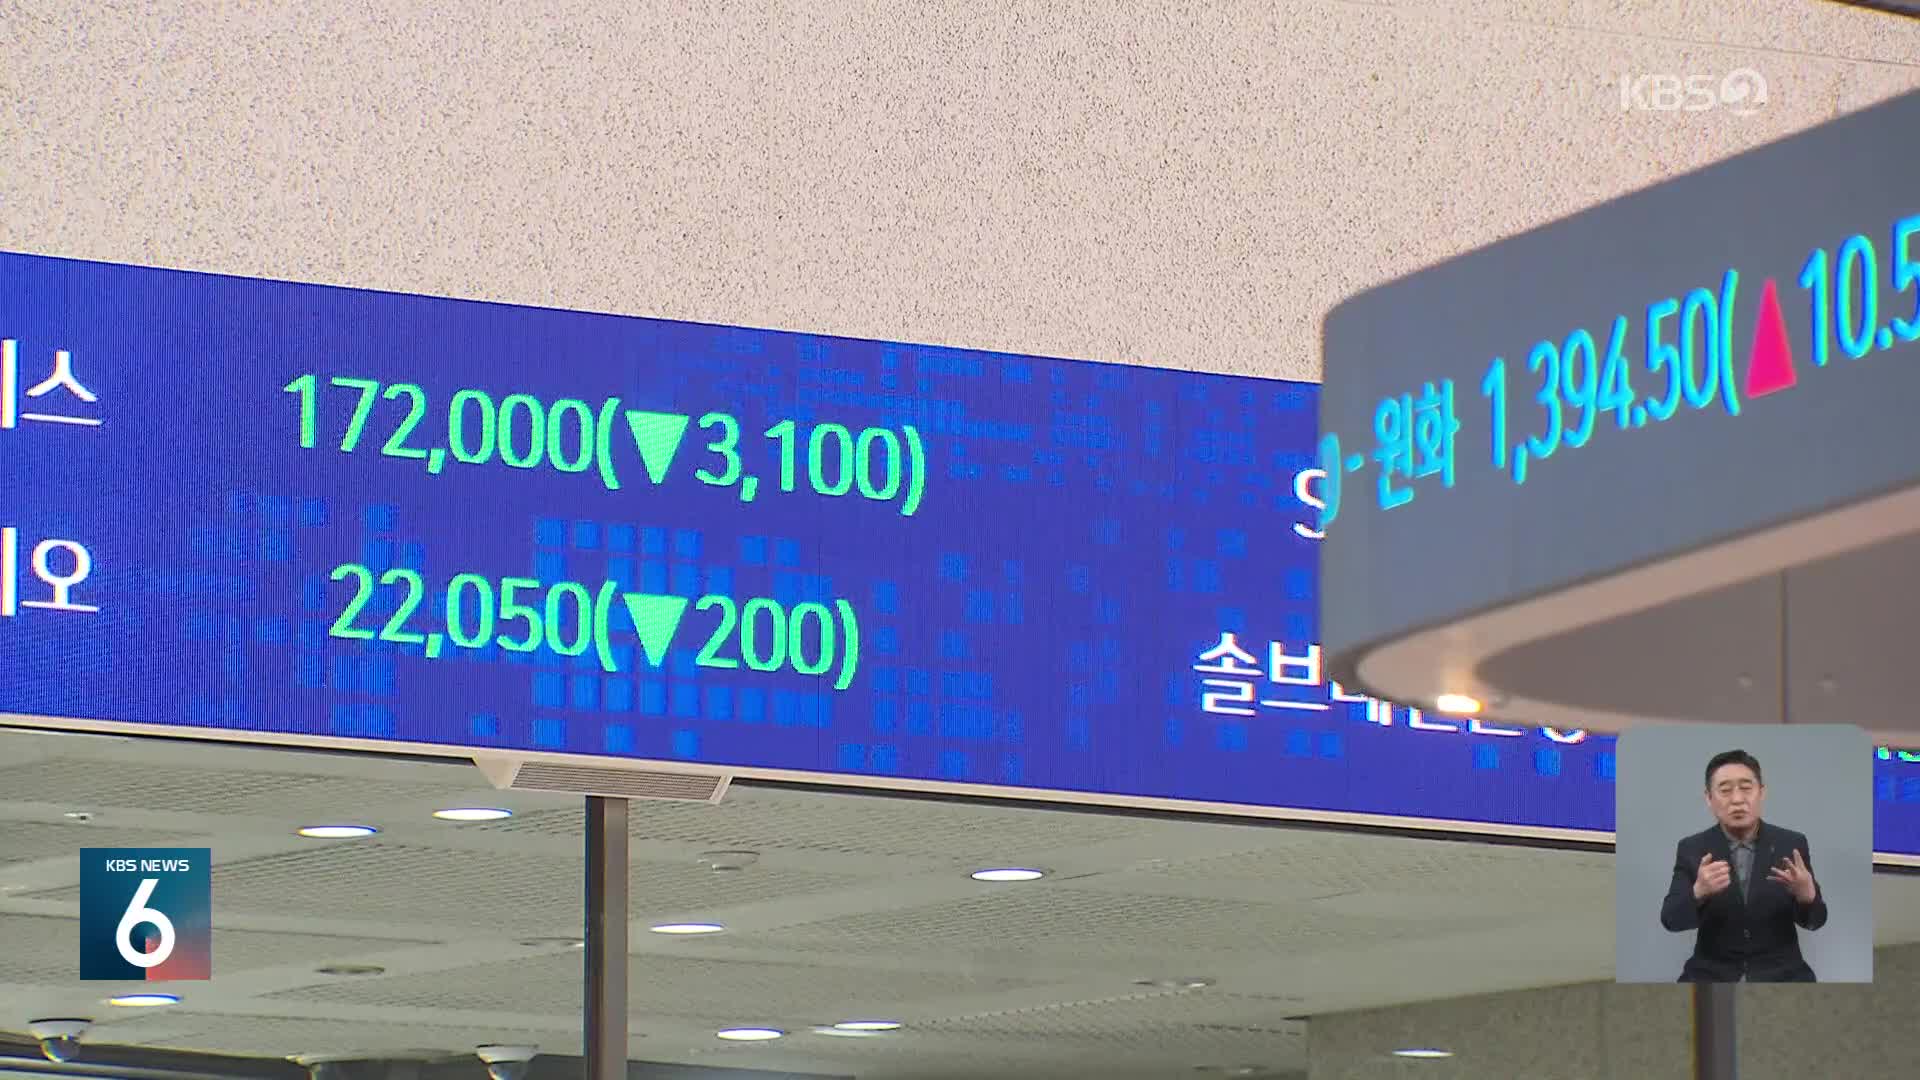 원·달러 환율 장중 1,400원 돌파…외환당국 구두 개입